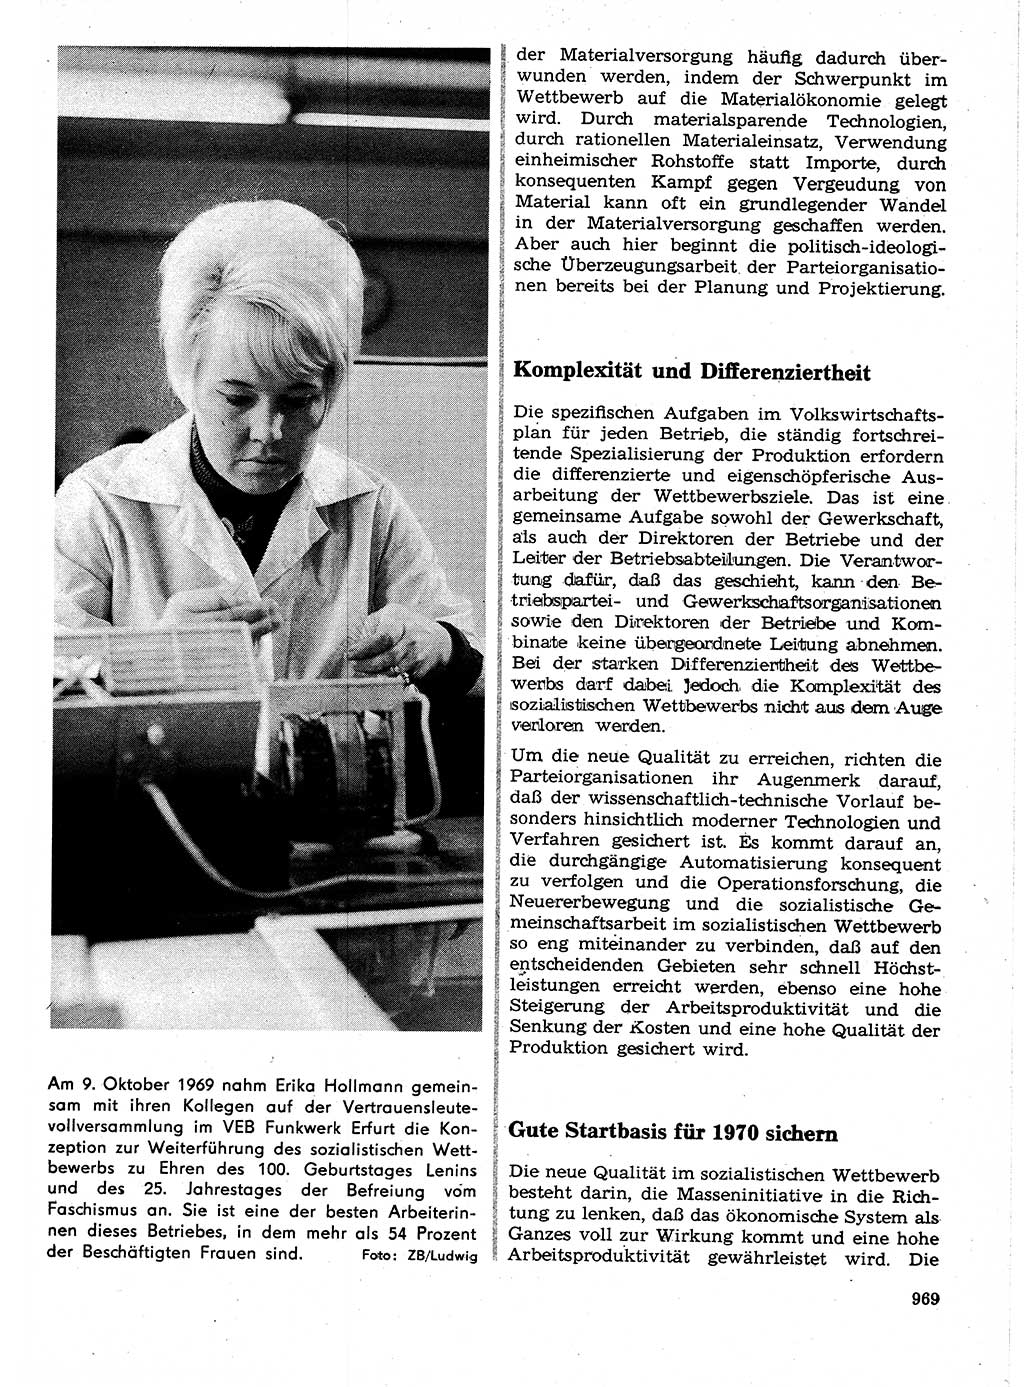 Neuer Weg (NW), Organ des Zentralkomitees (ZK) der SED (Sozialistische Einheitspartei Deutschlands) für Fragen des Parteilebens, 24. Jahrgang [Deutsche Demokratische Republik (DDR)] 1969, Seite 969 (NW ZK SED DDR 1969, S. 969)